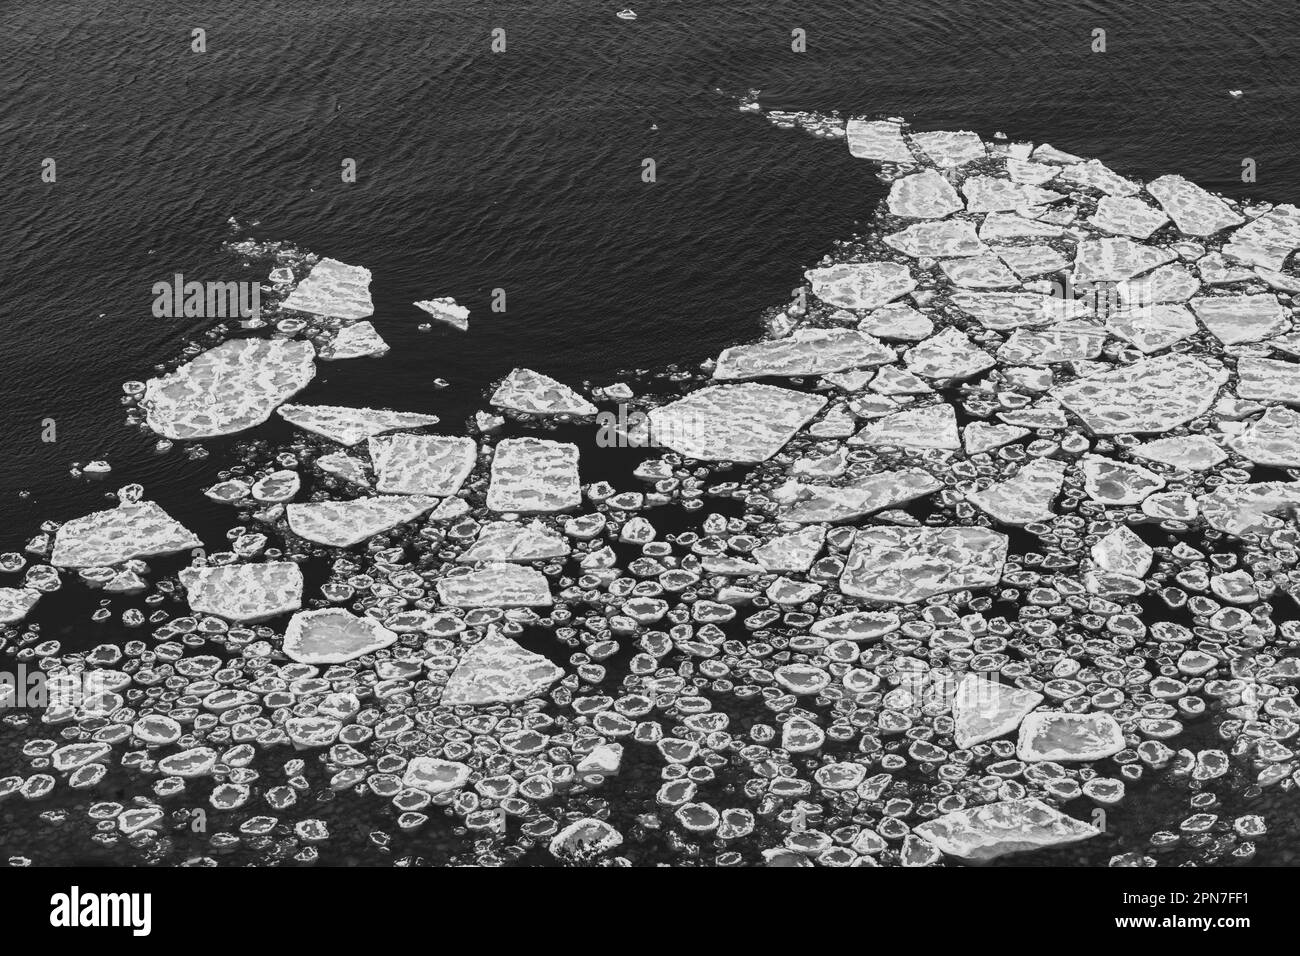 Morceaux de glace flottant sur la baie de Green Bay photographiés depuis le point d'observation au parc régional des promontoires de Door County Bluff, près de Ellison Bay. Banque D'Images